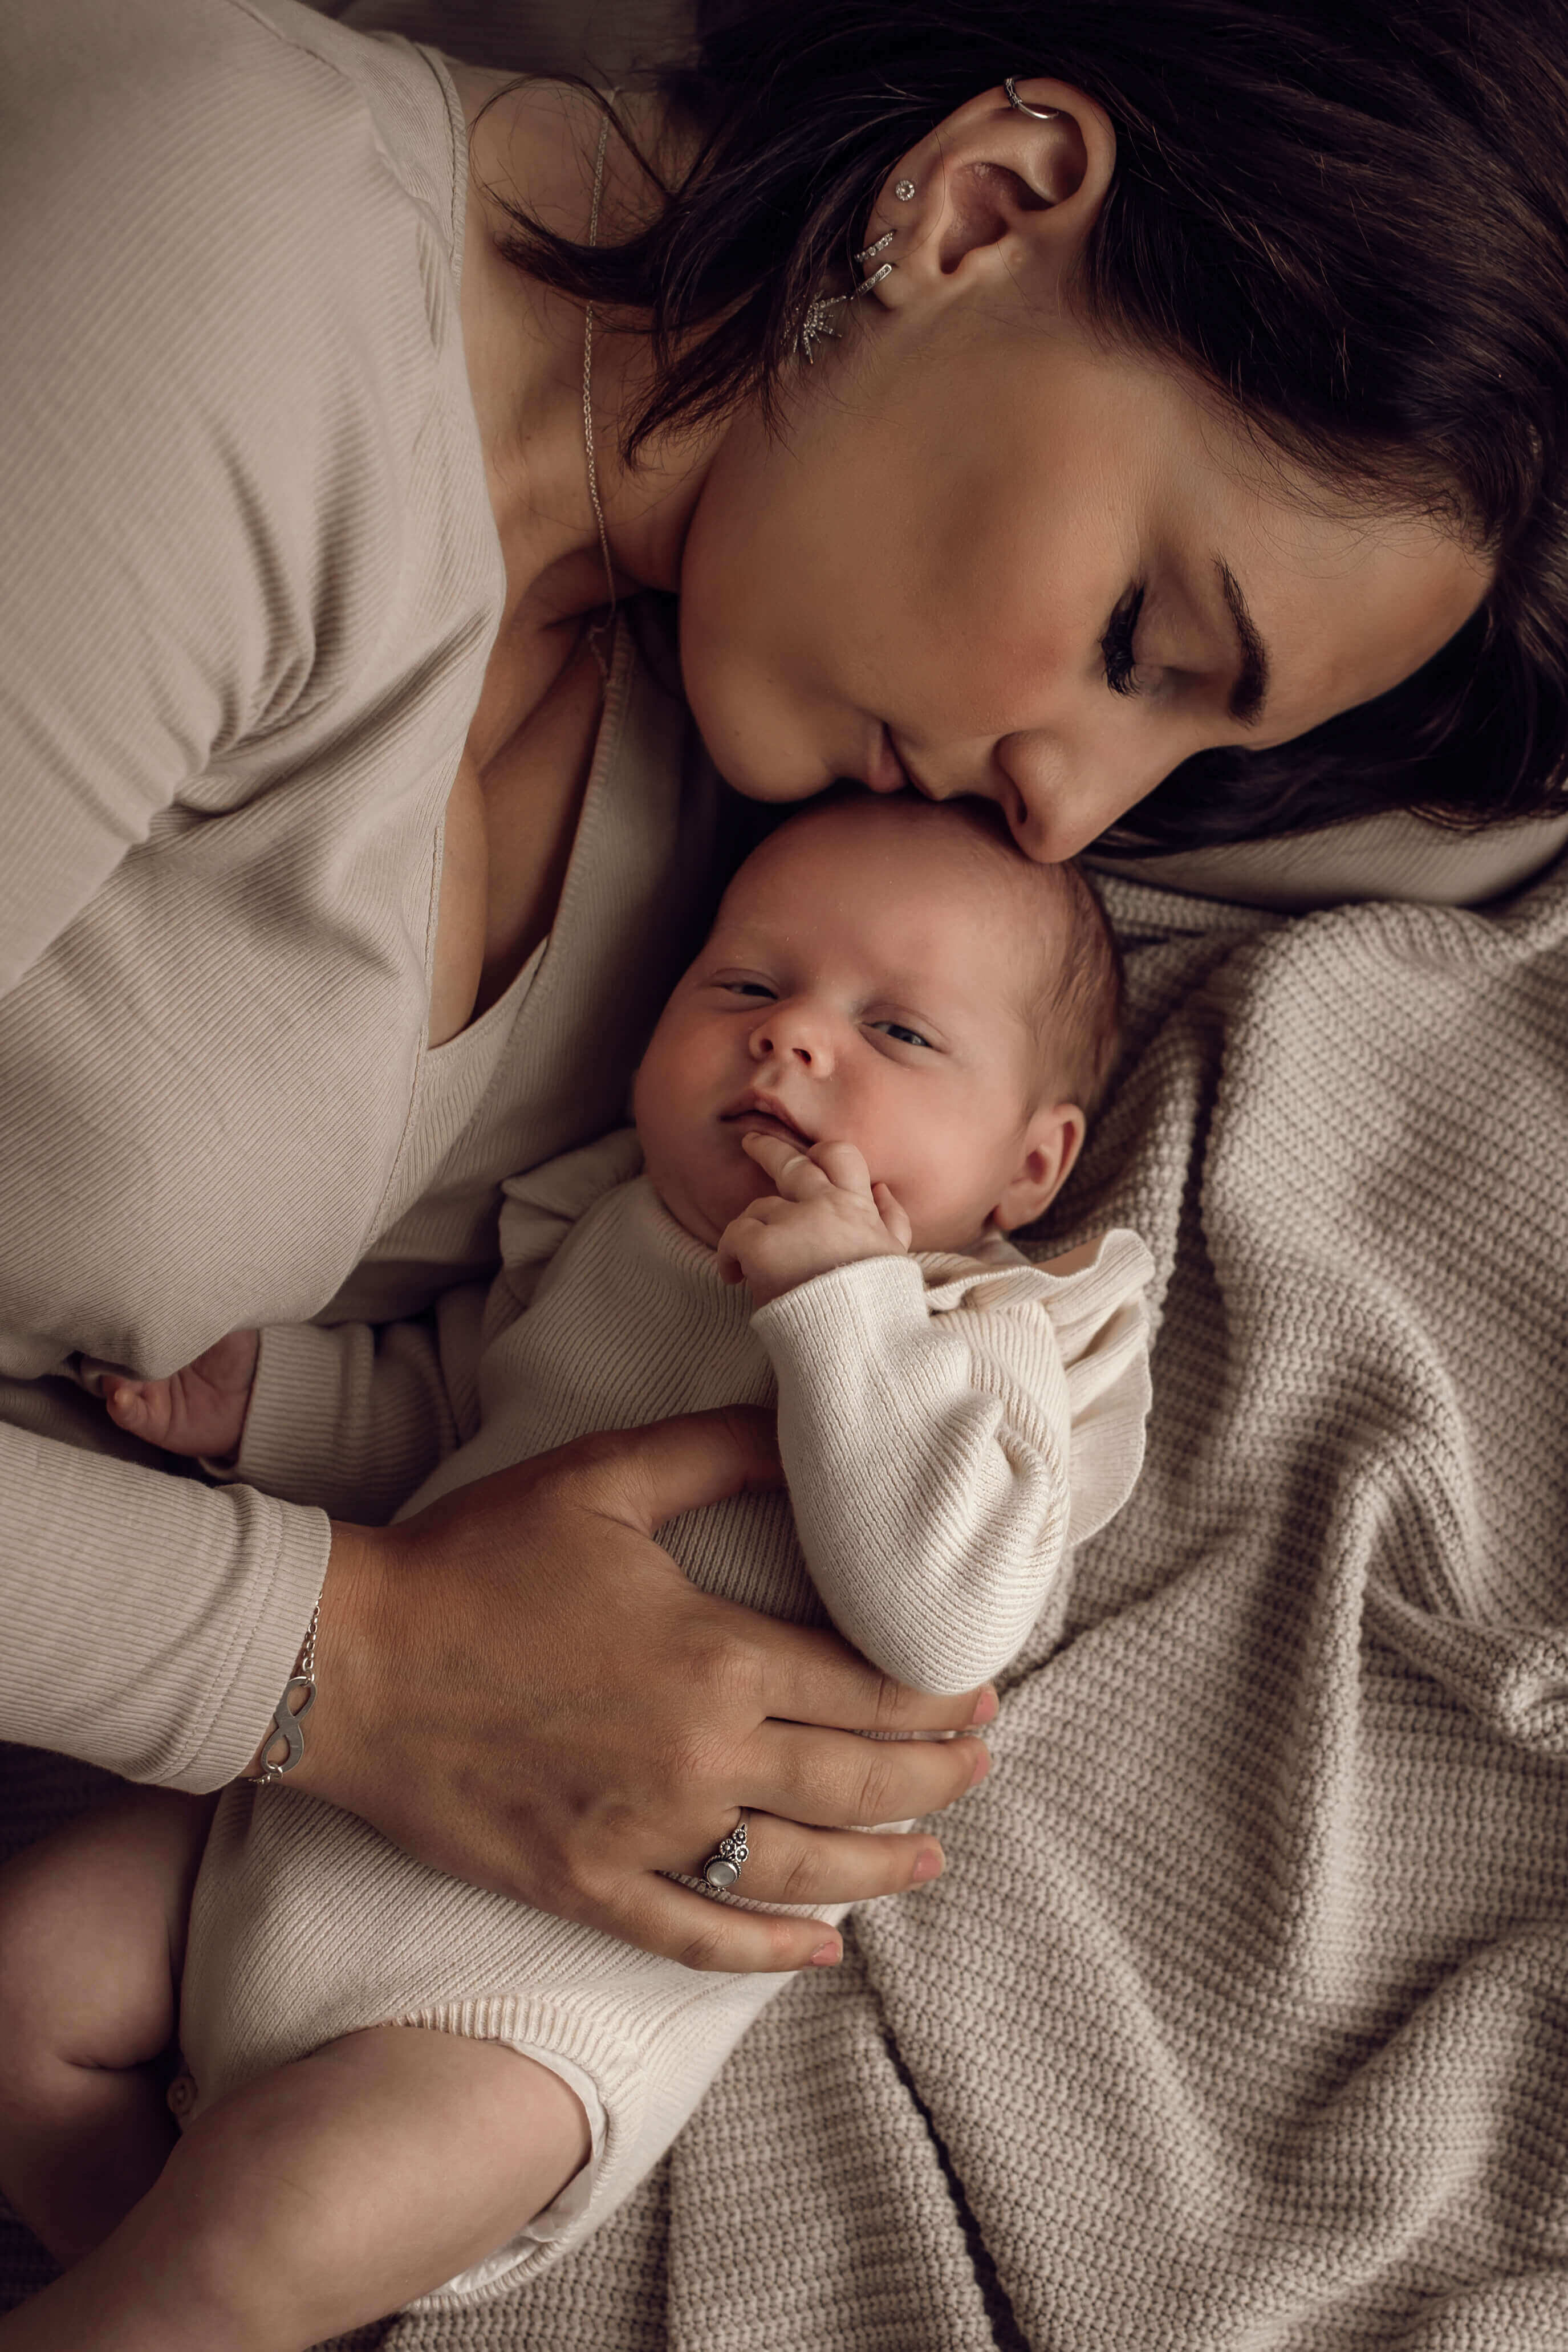 Newborn Fotograaf groningen, baby fotografie, pasgeboren, kraamtijd, Luxshots